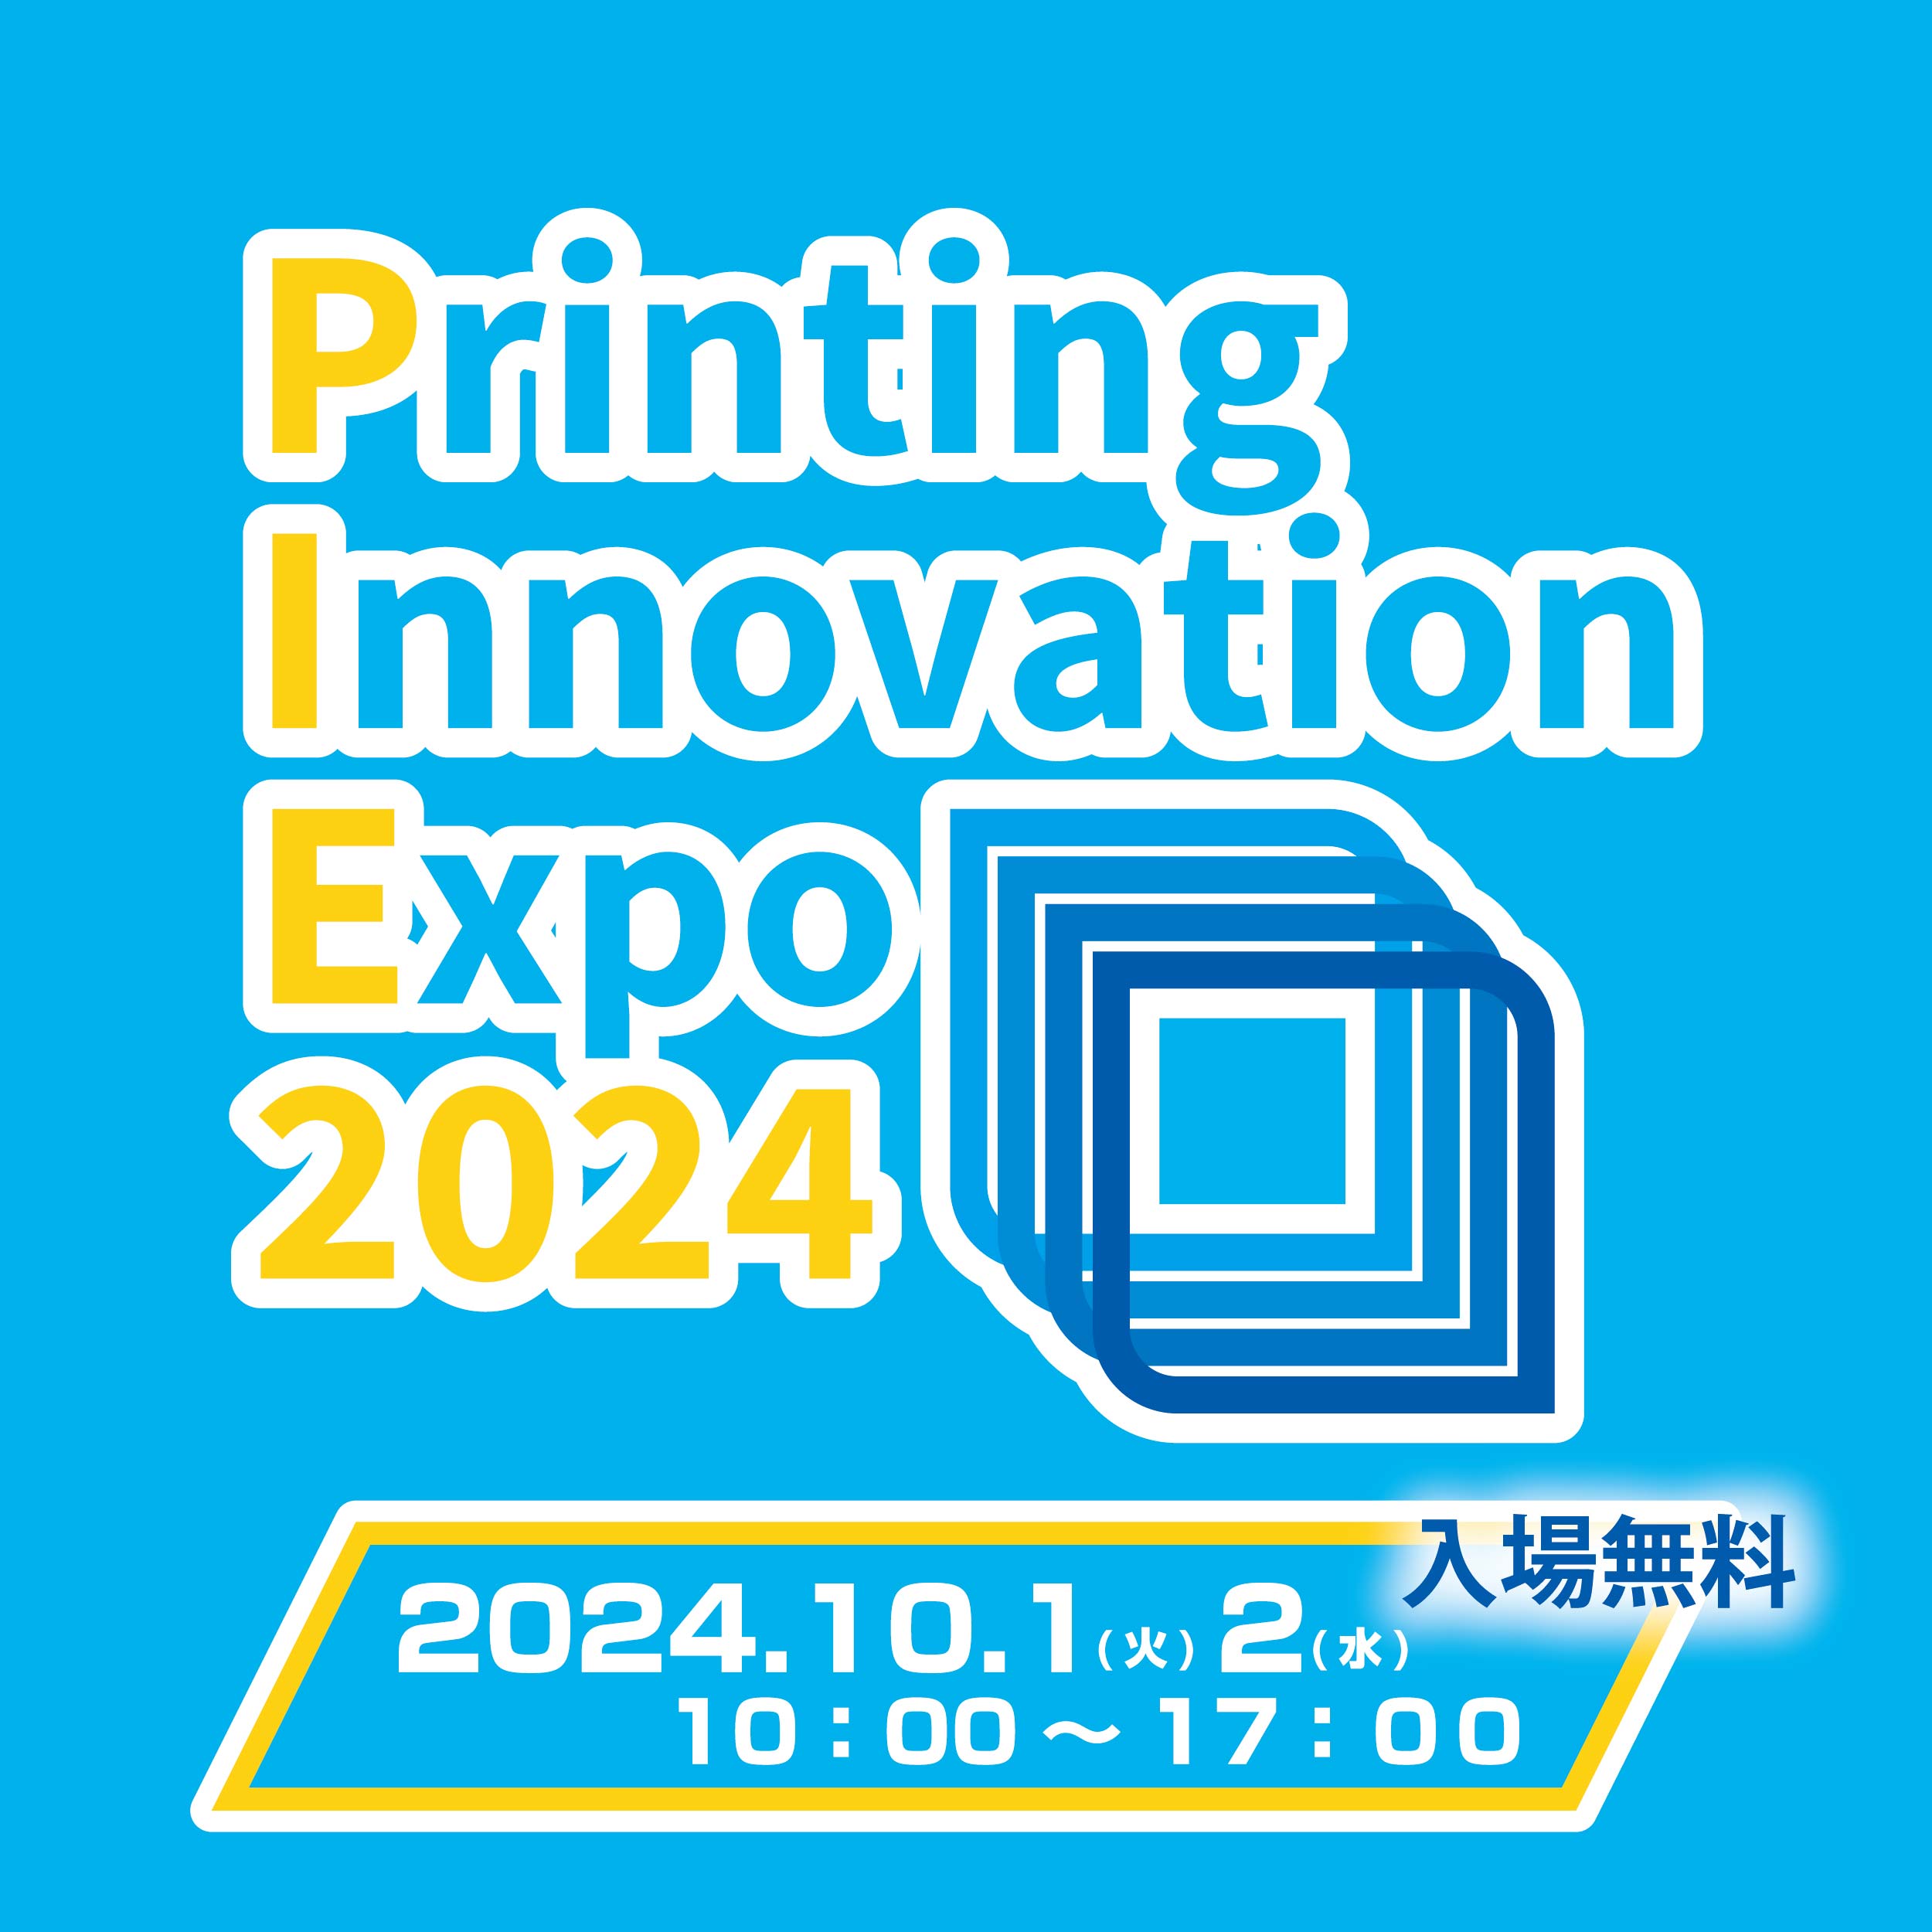 Printing Innovation Expo 2024 特設ページ開設のお知らせ